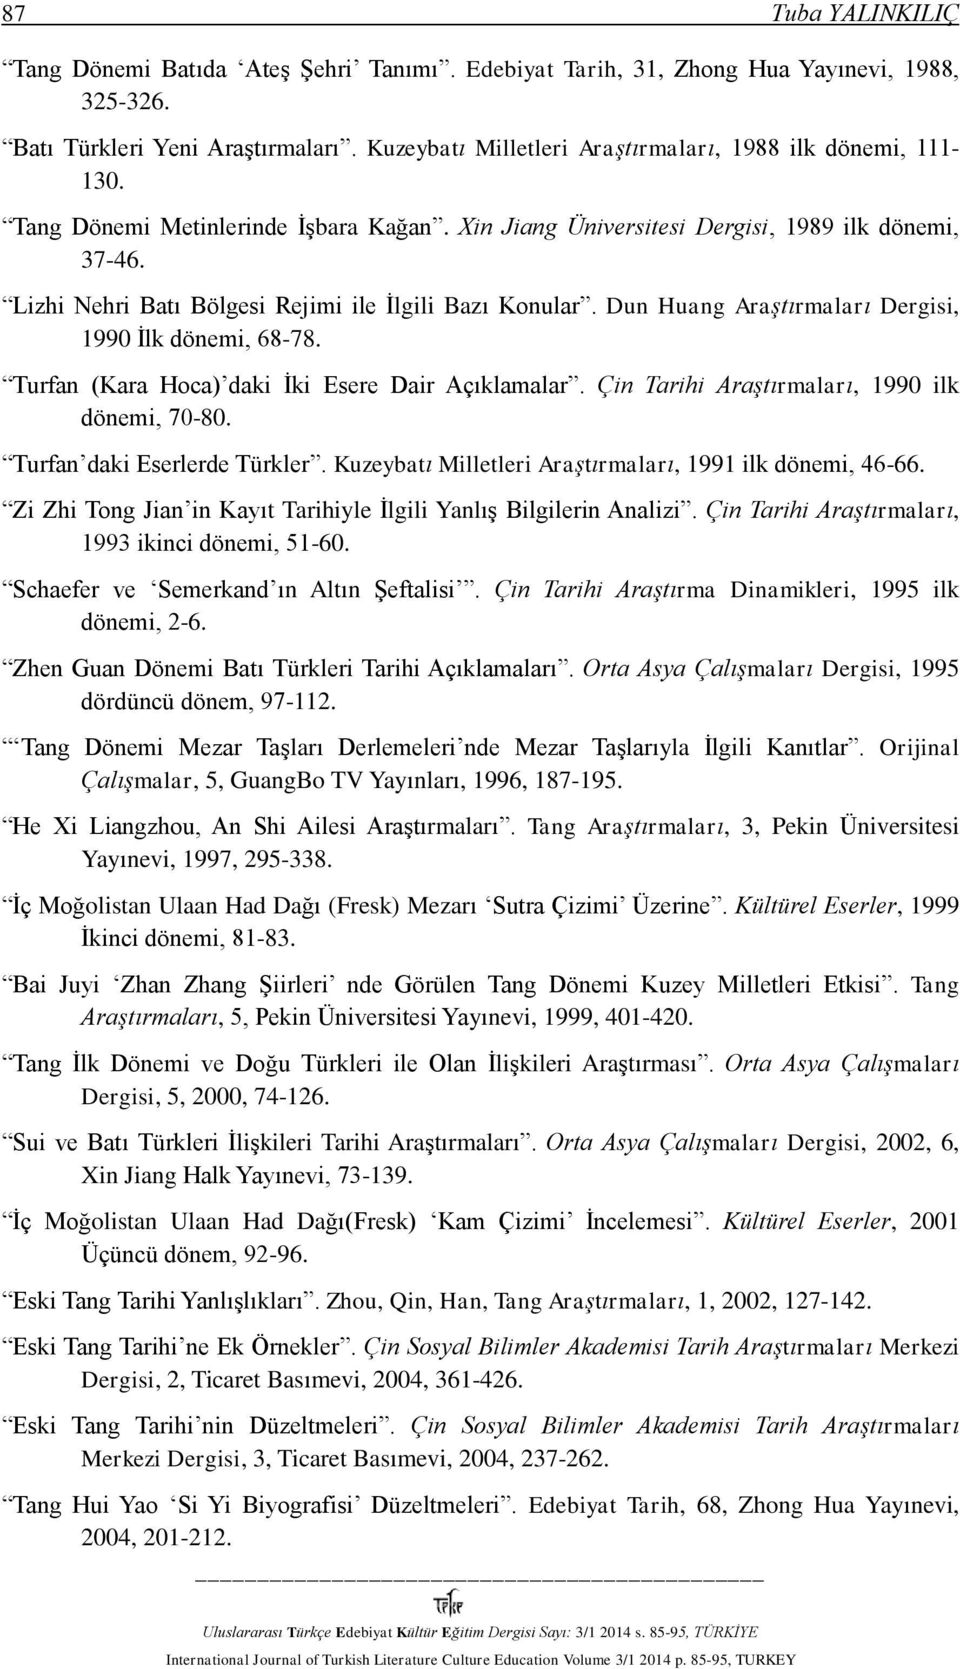 Lizhi Nehri Batı Bölgesi Rejimi ile İlgili Bazı Konular. Dun Huang Araştırmaları Dergisi, 1990 İlk dönemi, 68-78. Turfan (Kara Hoca) daki İki Esere Dair Açıklamalar.